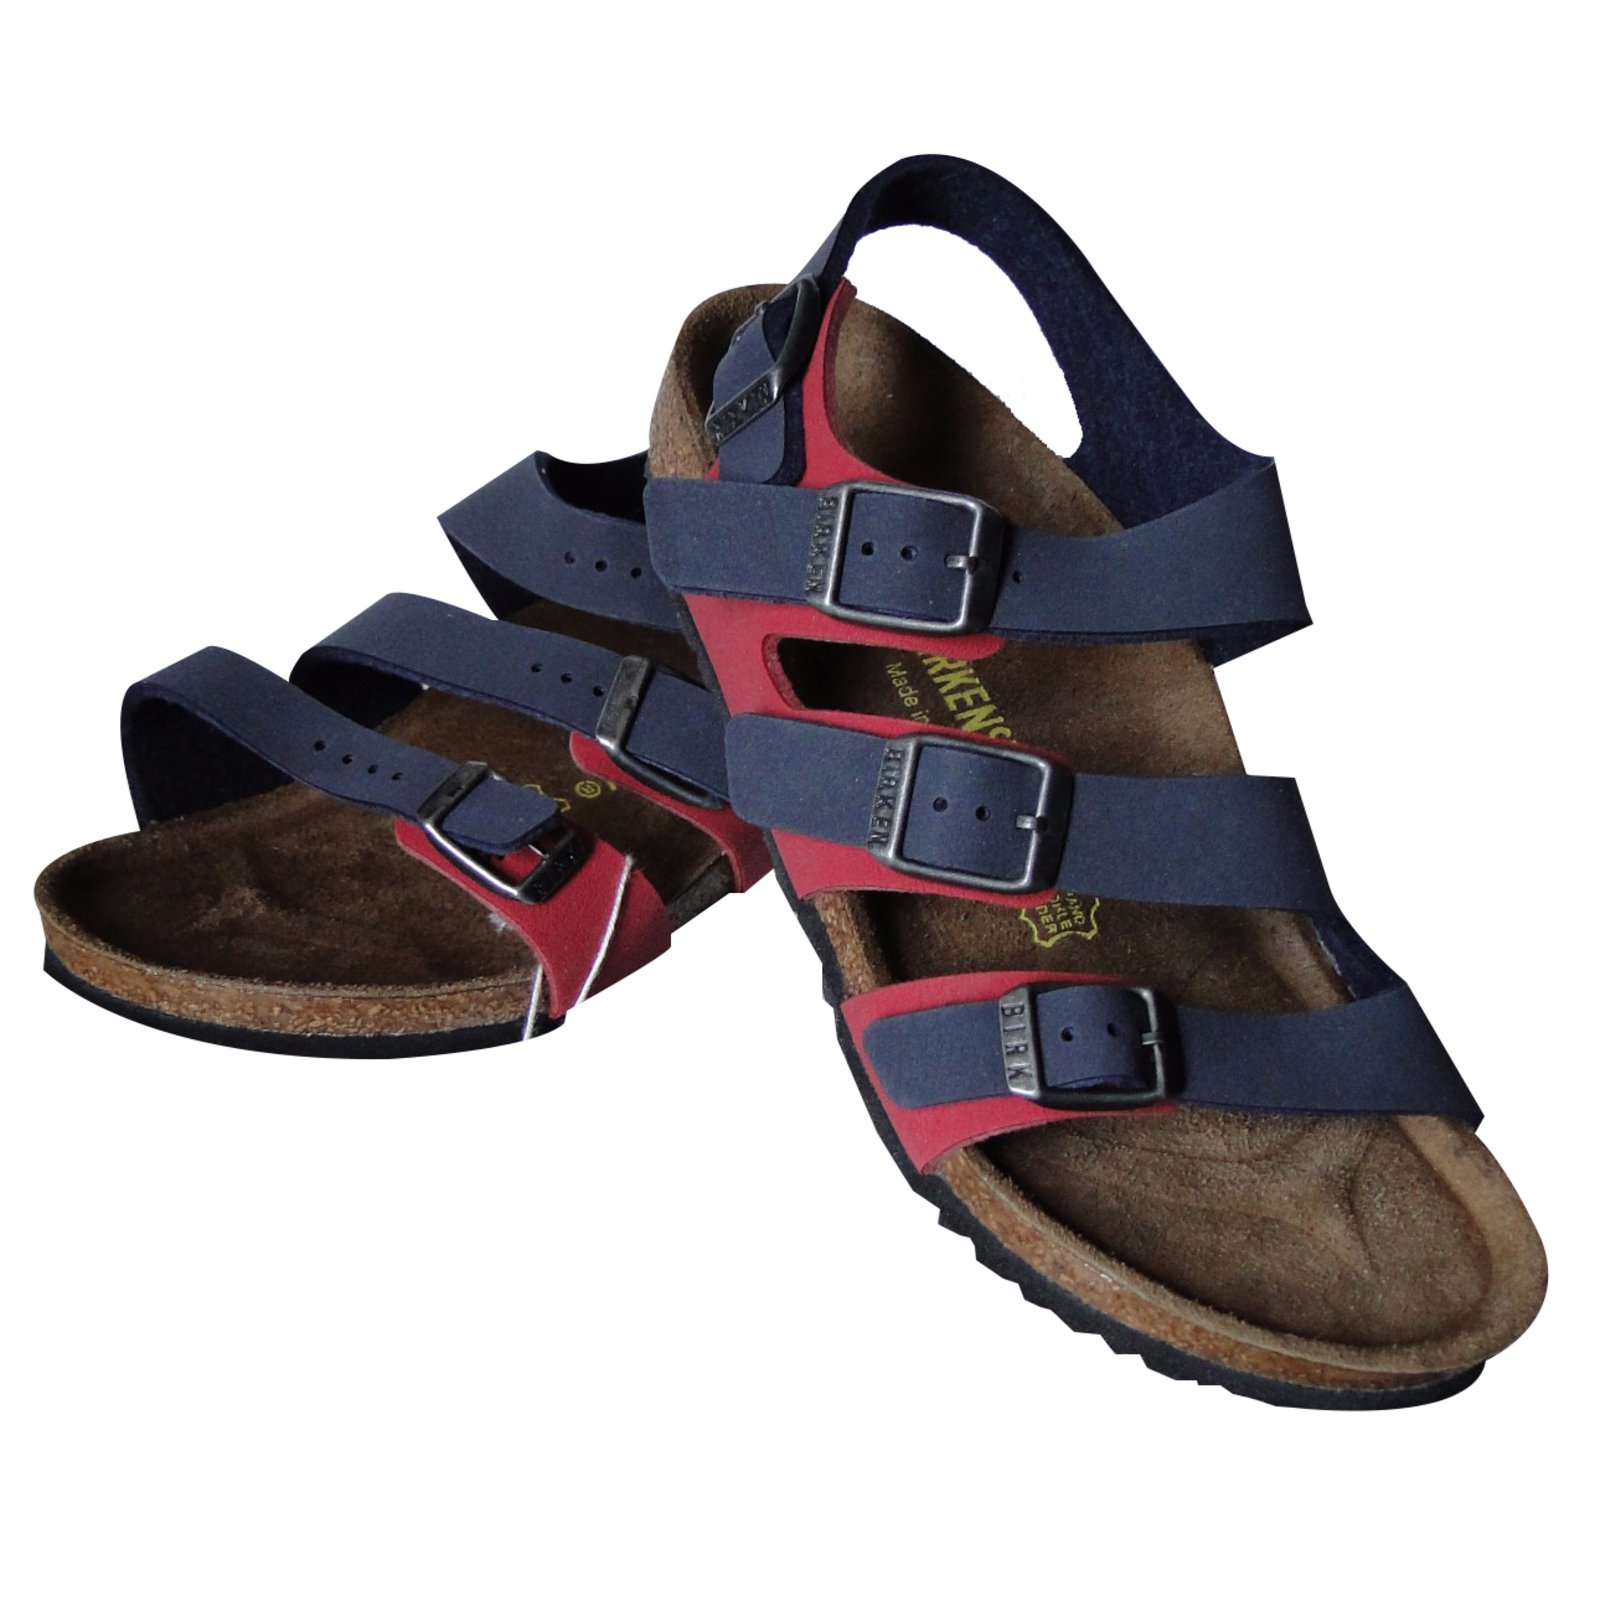 birkenstock sandals colors